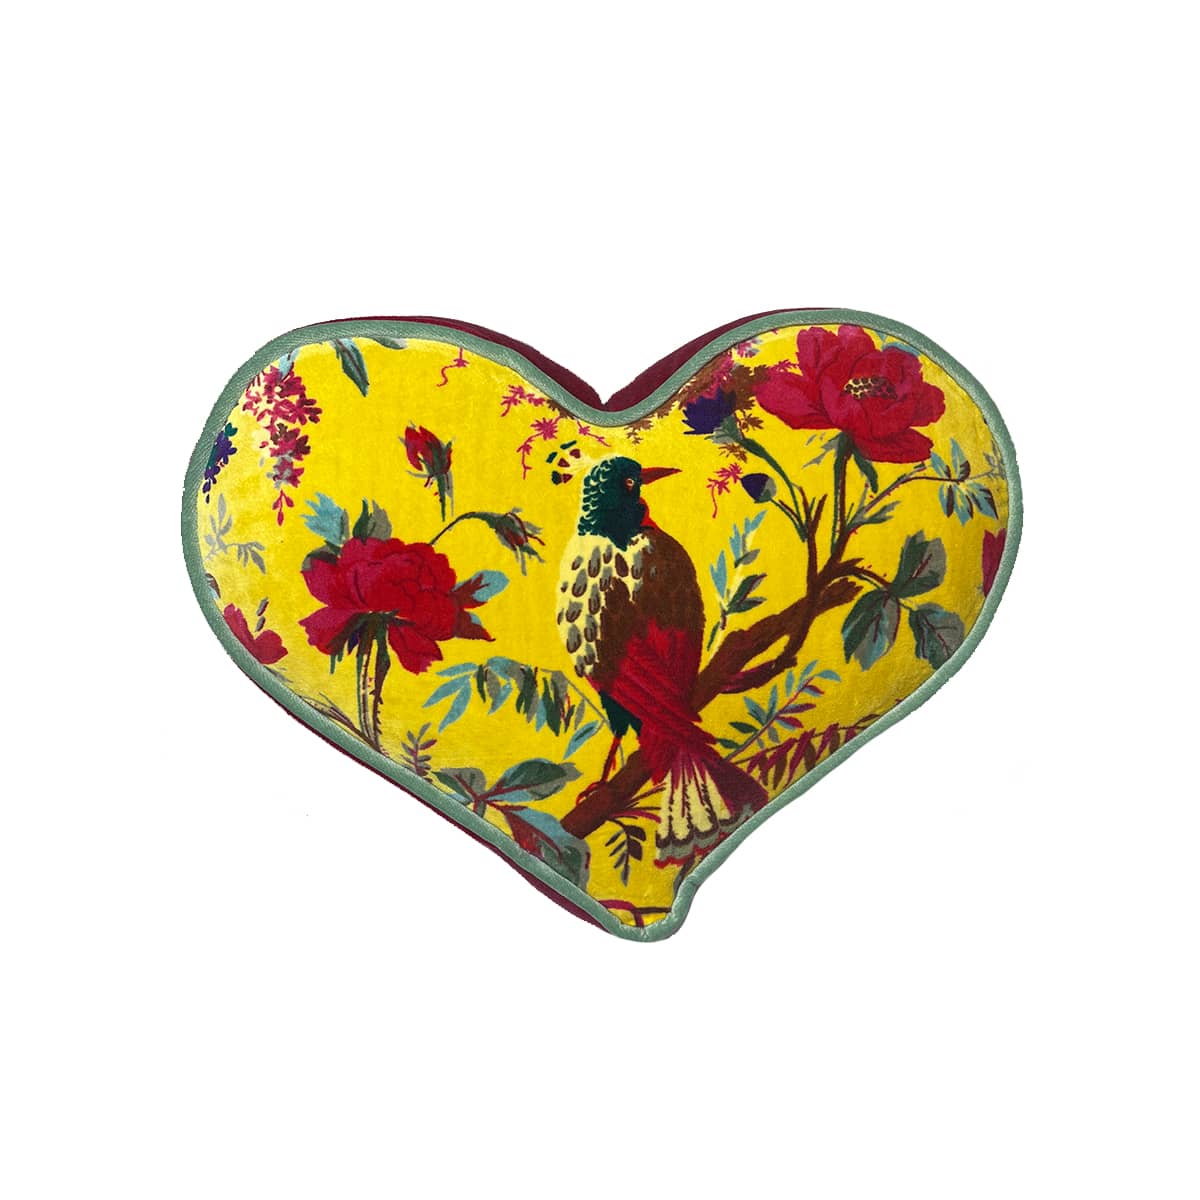 Heart Pillow -Bird Motif on Lemon Yellow